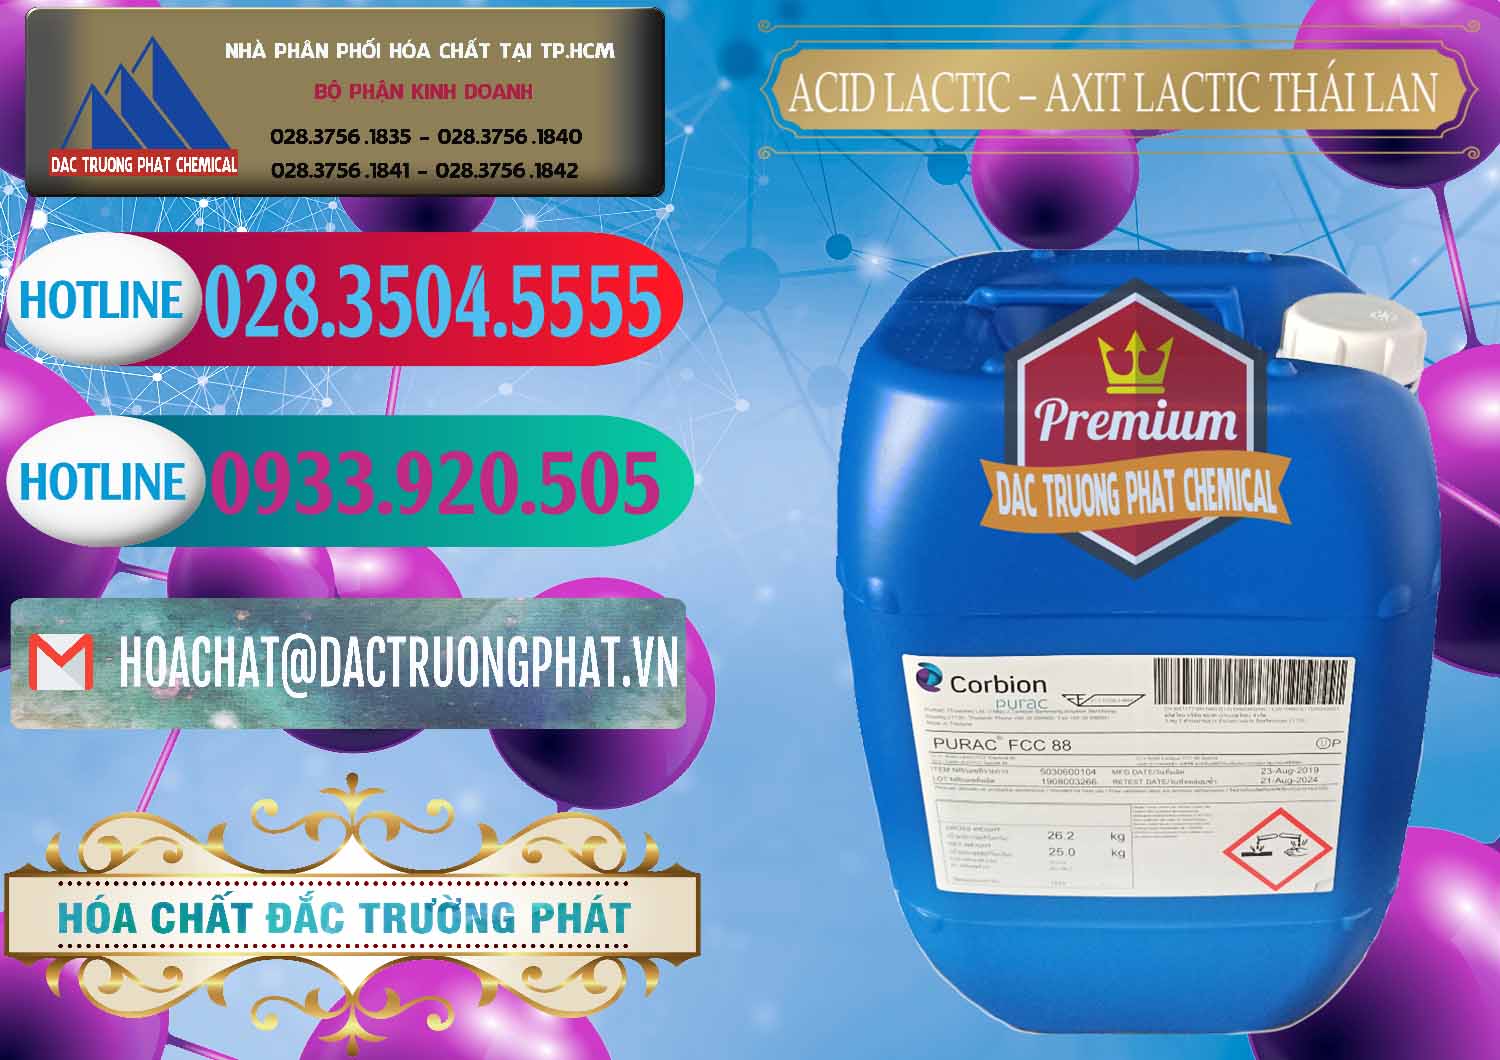 Nơi kinh doanh & bán Acid Lactic – Axit Lactic Thái Lan Purac FCC 88 - 0012 - Đơn vị cung cấp & phân phối hóa chất tại TP.HCM - truongphat.vn